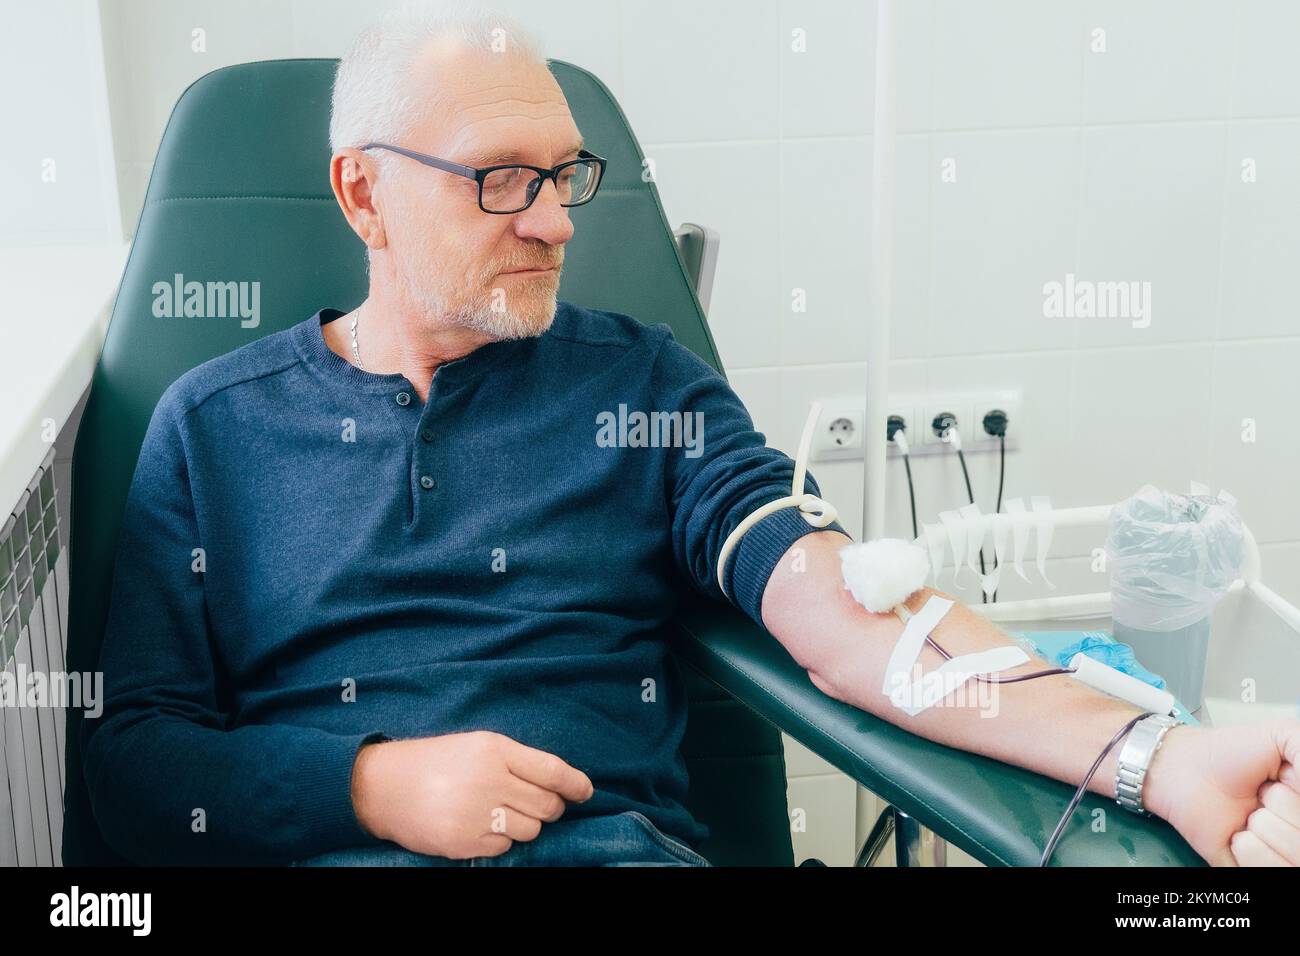 Spender spendet Blut. 50-60 Jahre alter Mann mit Brille sitzt in einem Stuhl in der medizinischen Klinik und spendet Blut aus der Vene. Authentische Szene. Freiwilliger spendet Blut, um Leben zu retten. Stockfoto